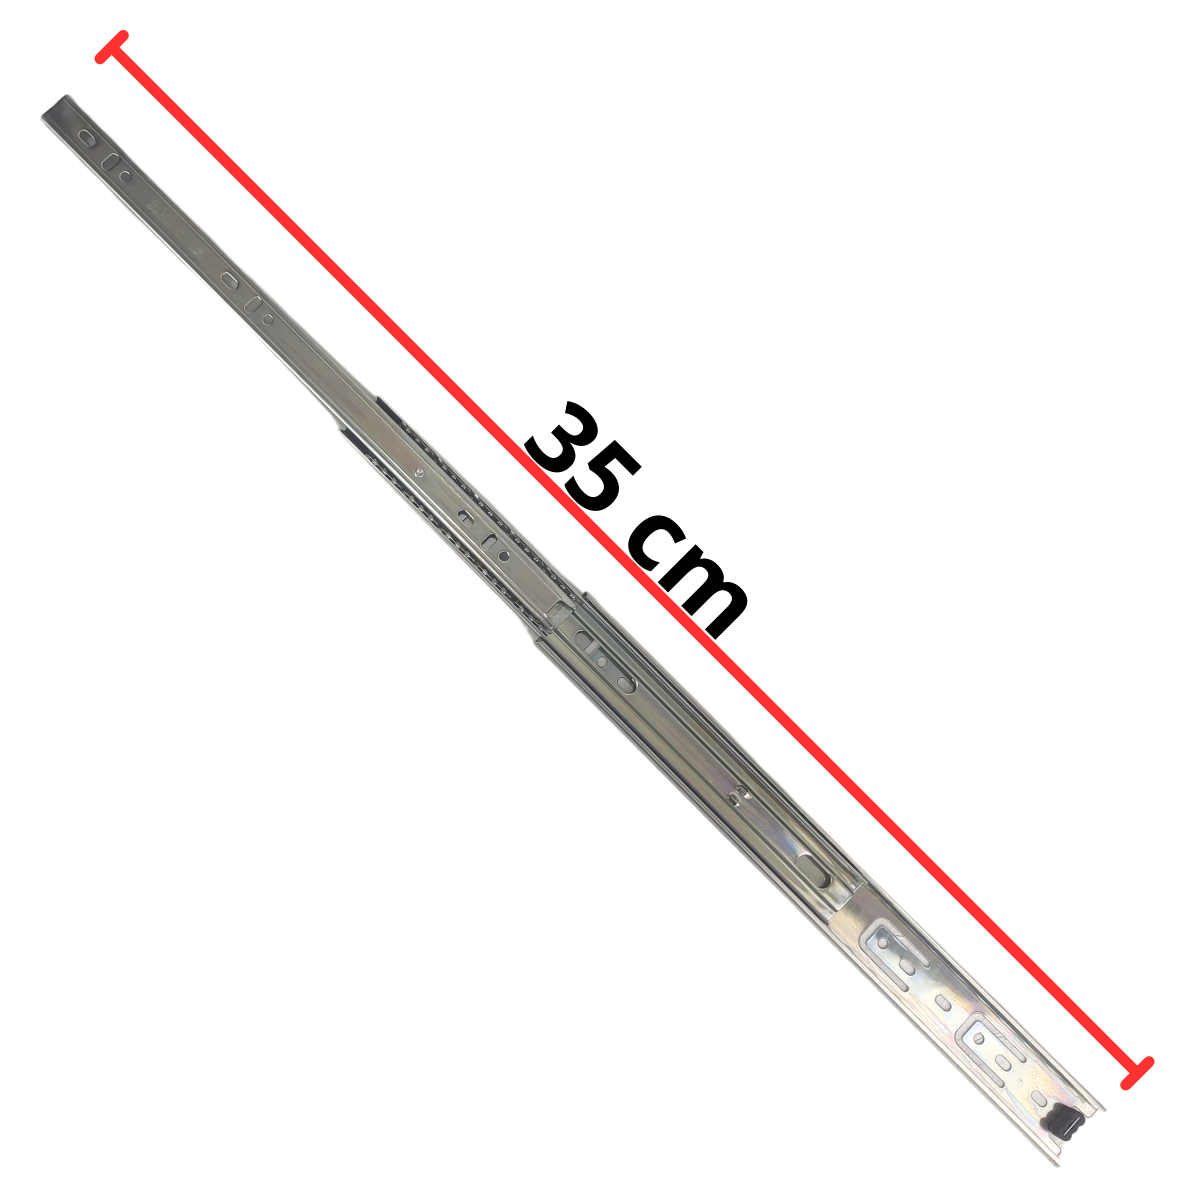 Corrediça Gaveta Trilho Telescópica para Móveis Par Corrediças Telescópico 35cm até 35kg - 5